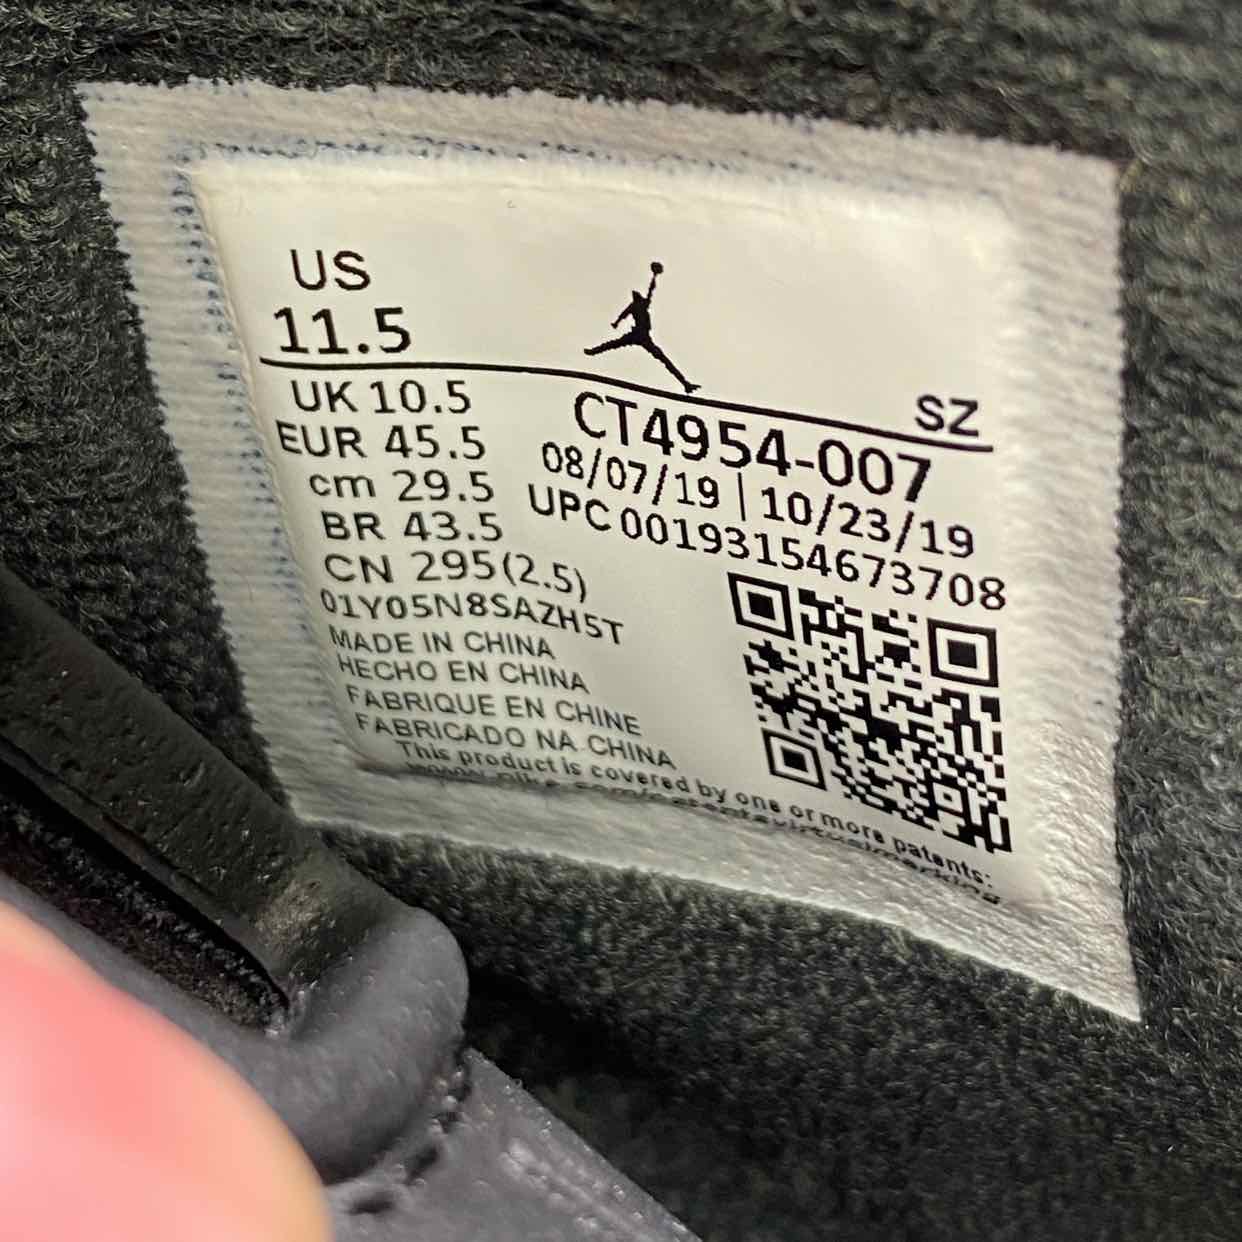 Air Jordan 6 Retro &quot;Dmp&quot; 2020 New Size 11.5